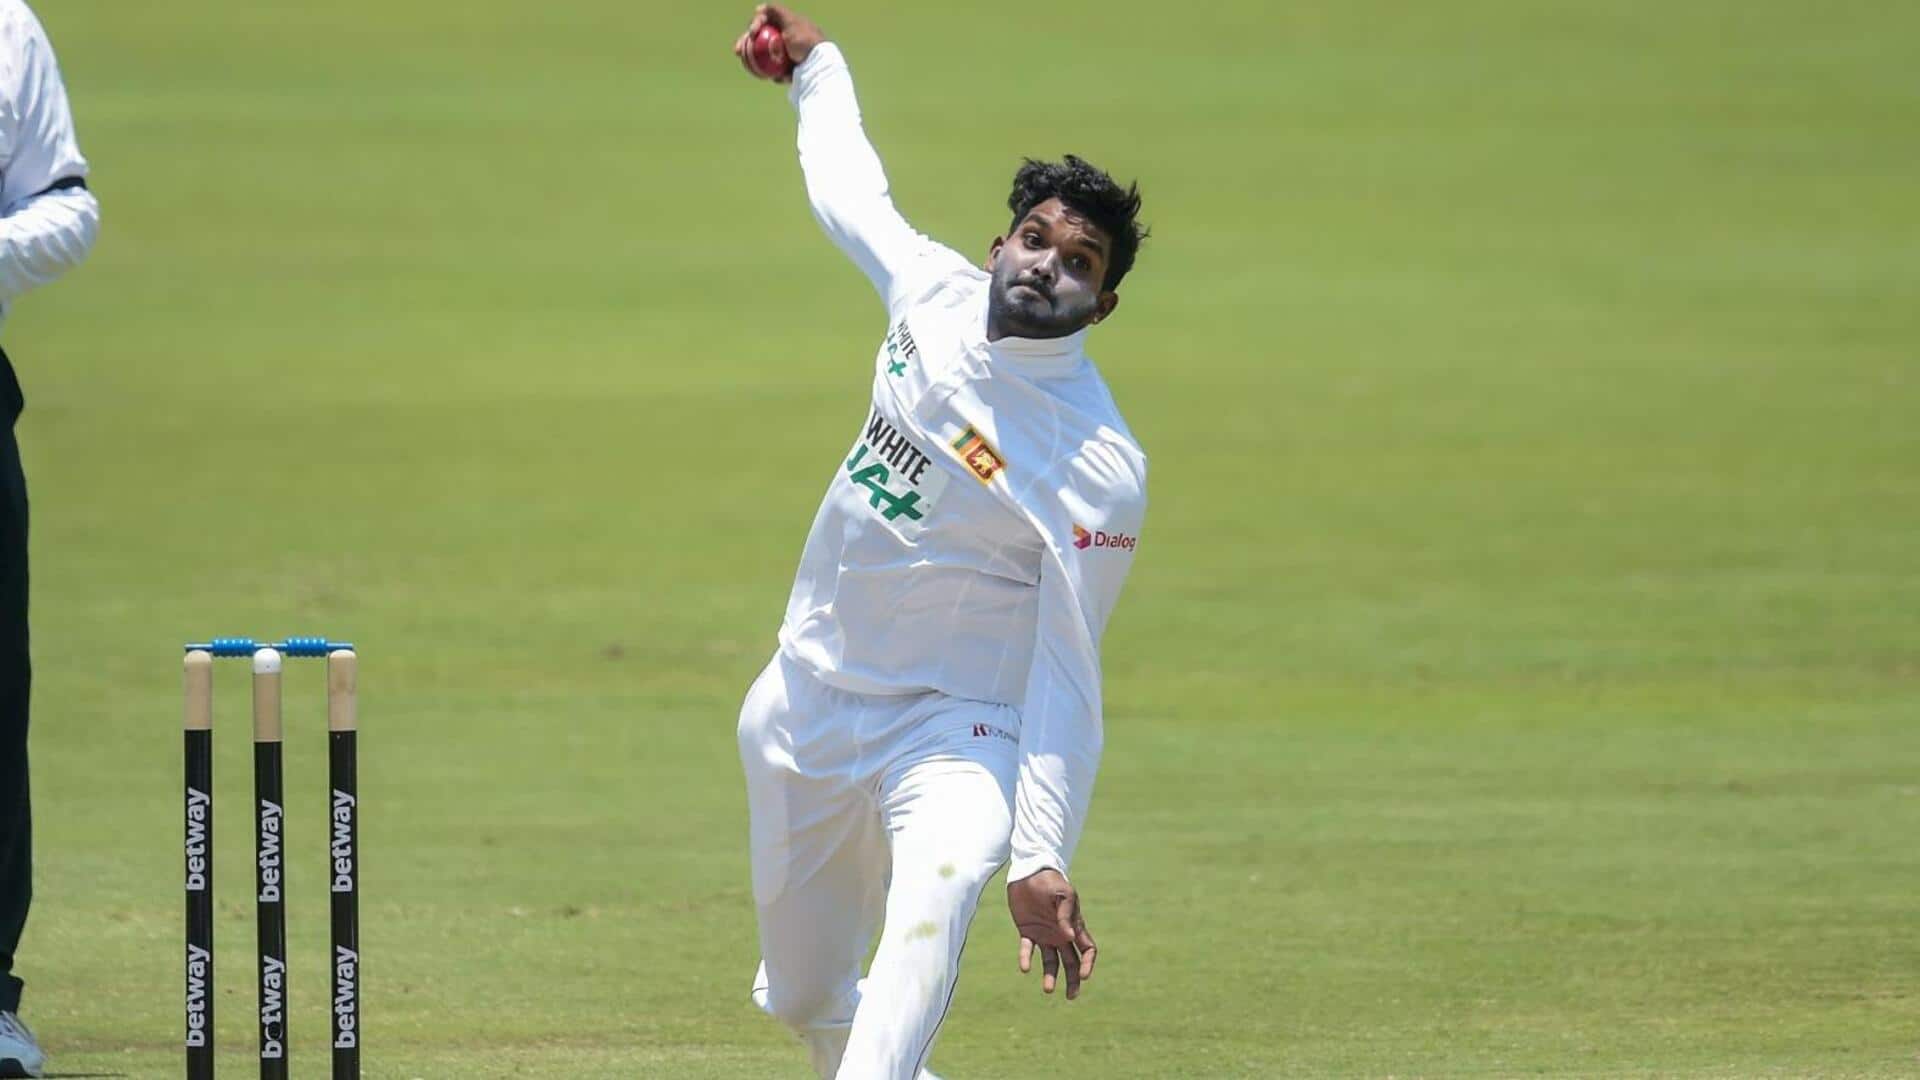 वनिंदु हसरंगा ने 7 महीने बाद वापस लिया टेस्ट से संन्यास, बांग्लादेश के खिलाफ खेलेंगे सीरीज